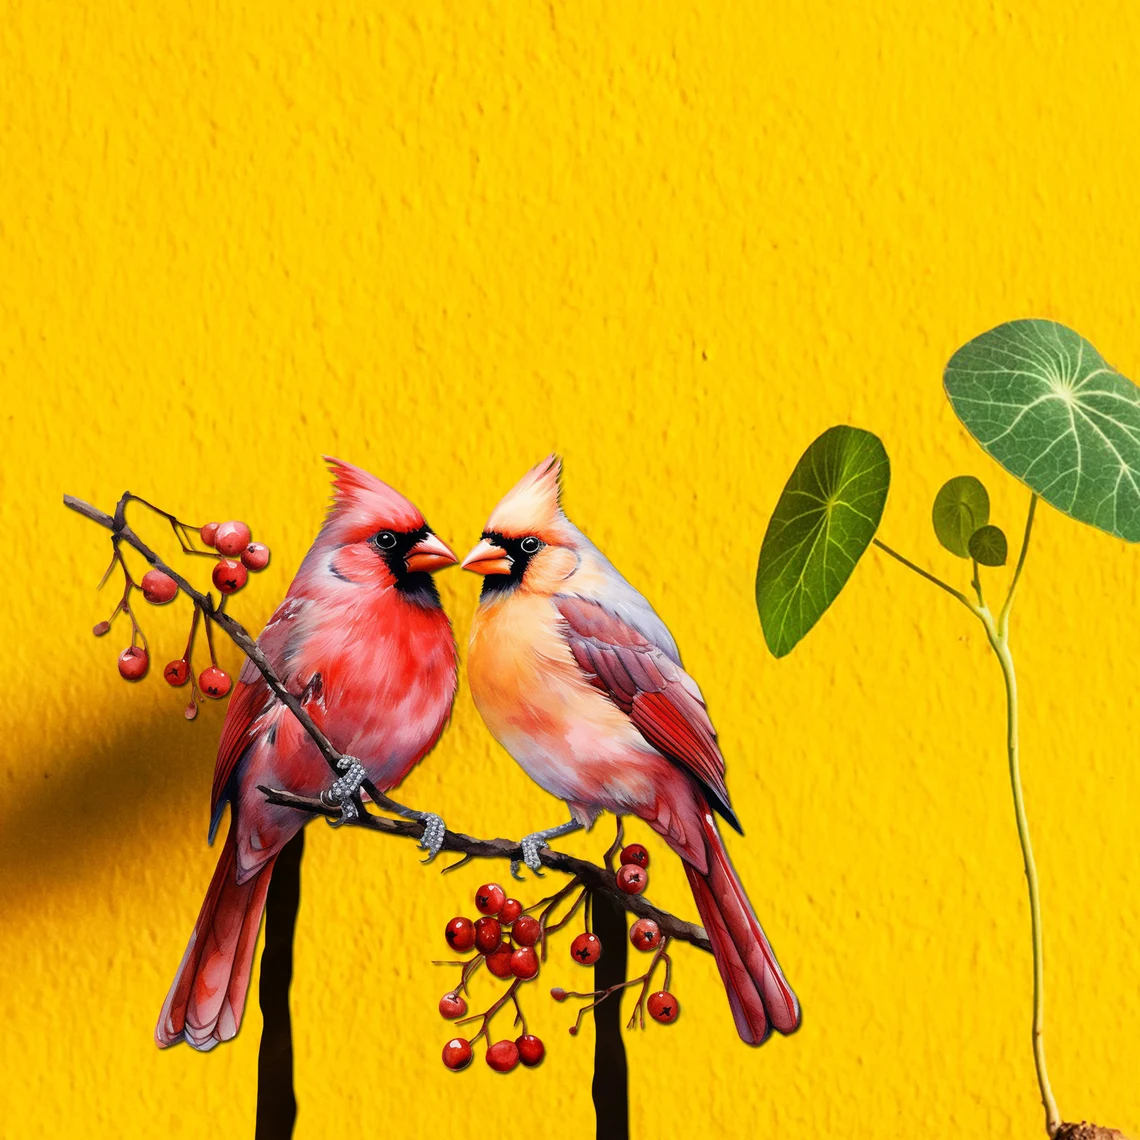 Garden Art - Painted Metal Bird